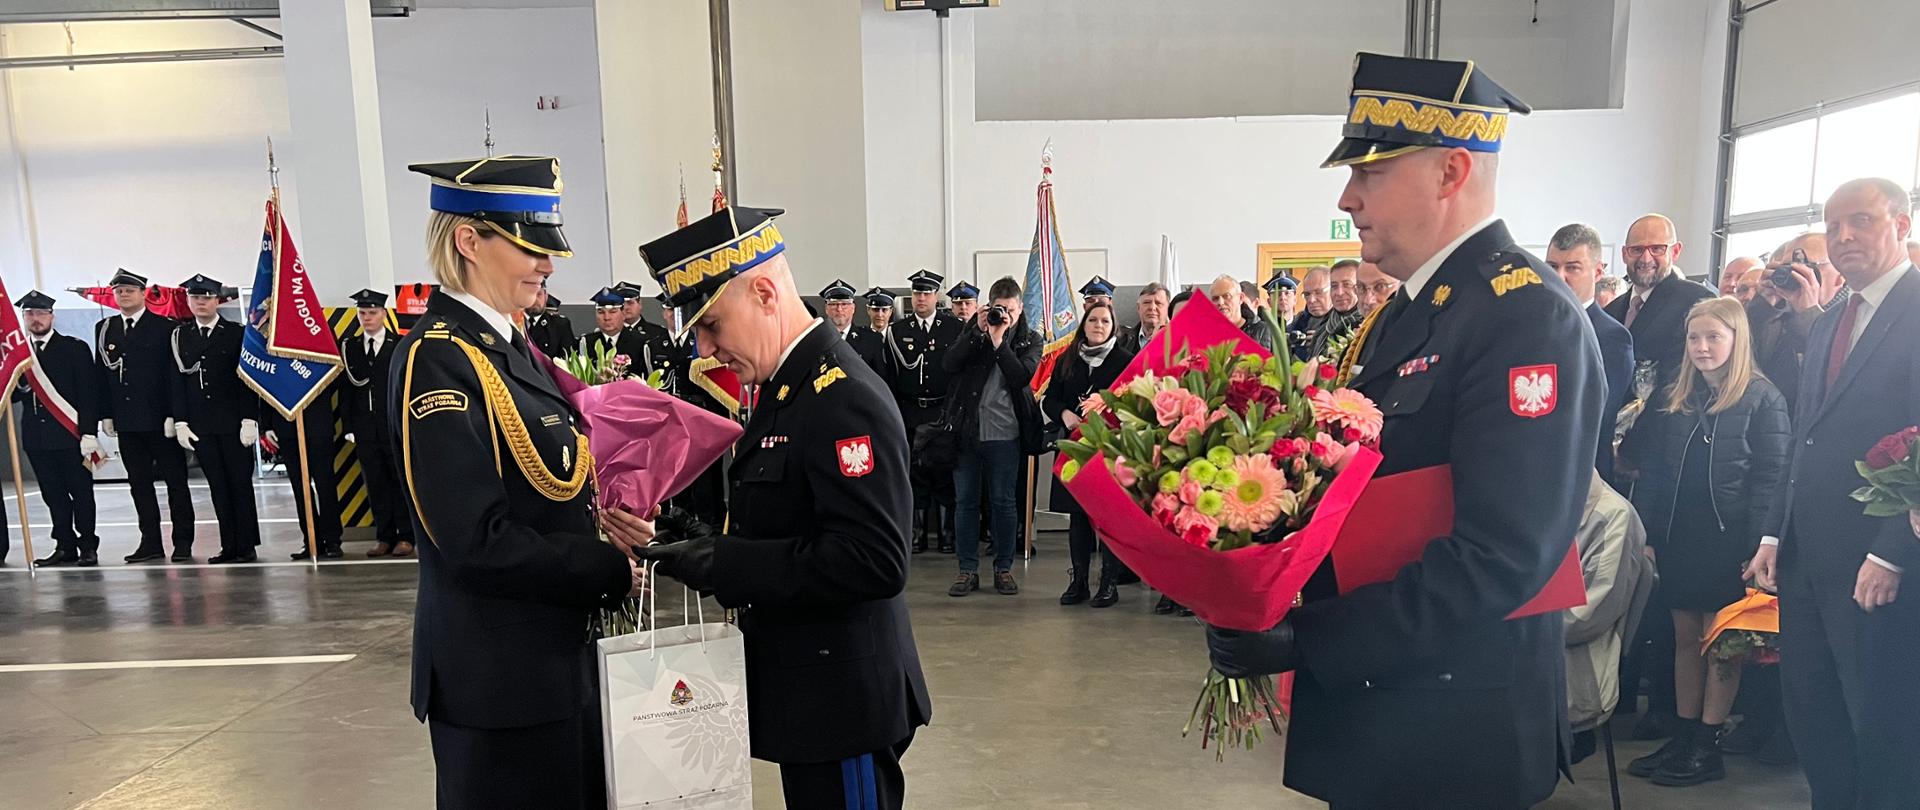 strażak wręcza kwiaty oraz prezent kobiecie strażak, za nim stoi drugi strażak z kwaitali, w tle gruupa strażaków